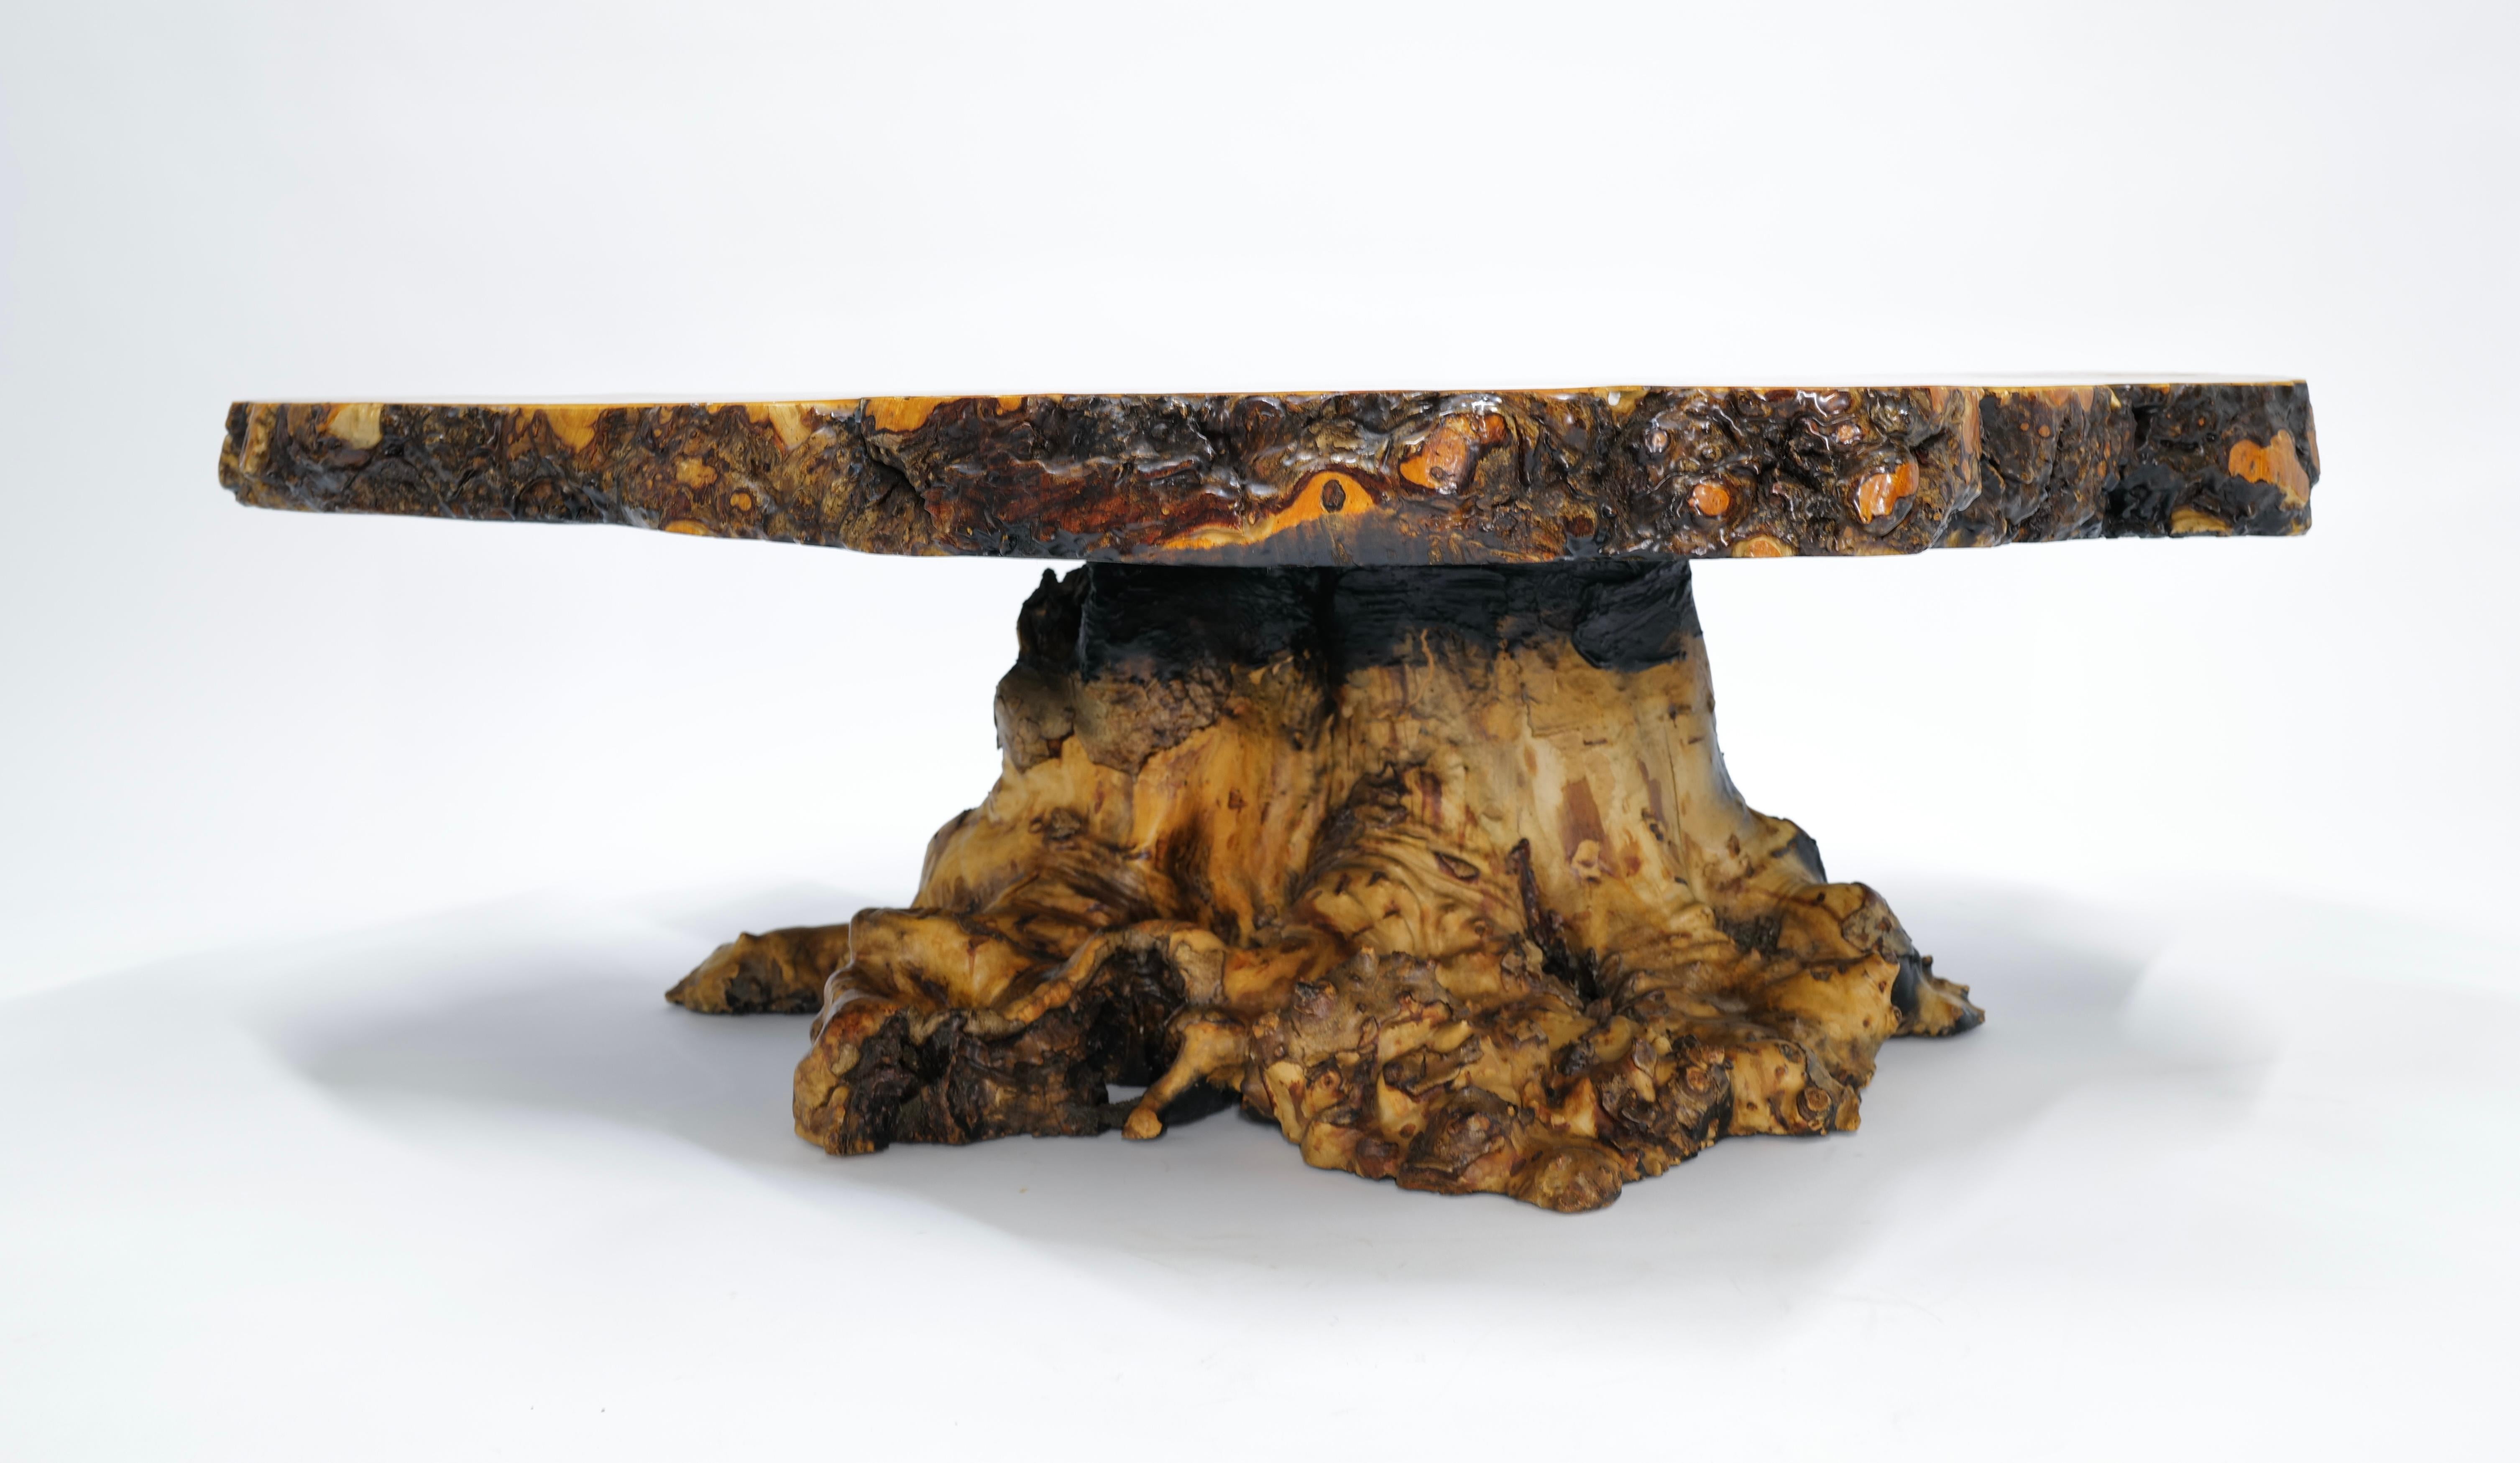 Stellen Sie sich ein atemberaubendes Möbelstück vor, das mühelos die Schönheit der Natur mit elegantem Design verbindet: der Live Edge California Buckeye Burlwood Cocktail Table. Dieser Tisch ist aus feinstem kalifornischen Buckeye Burlwood